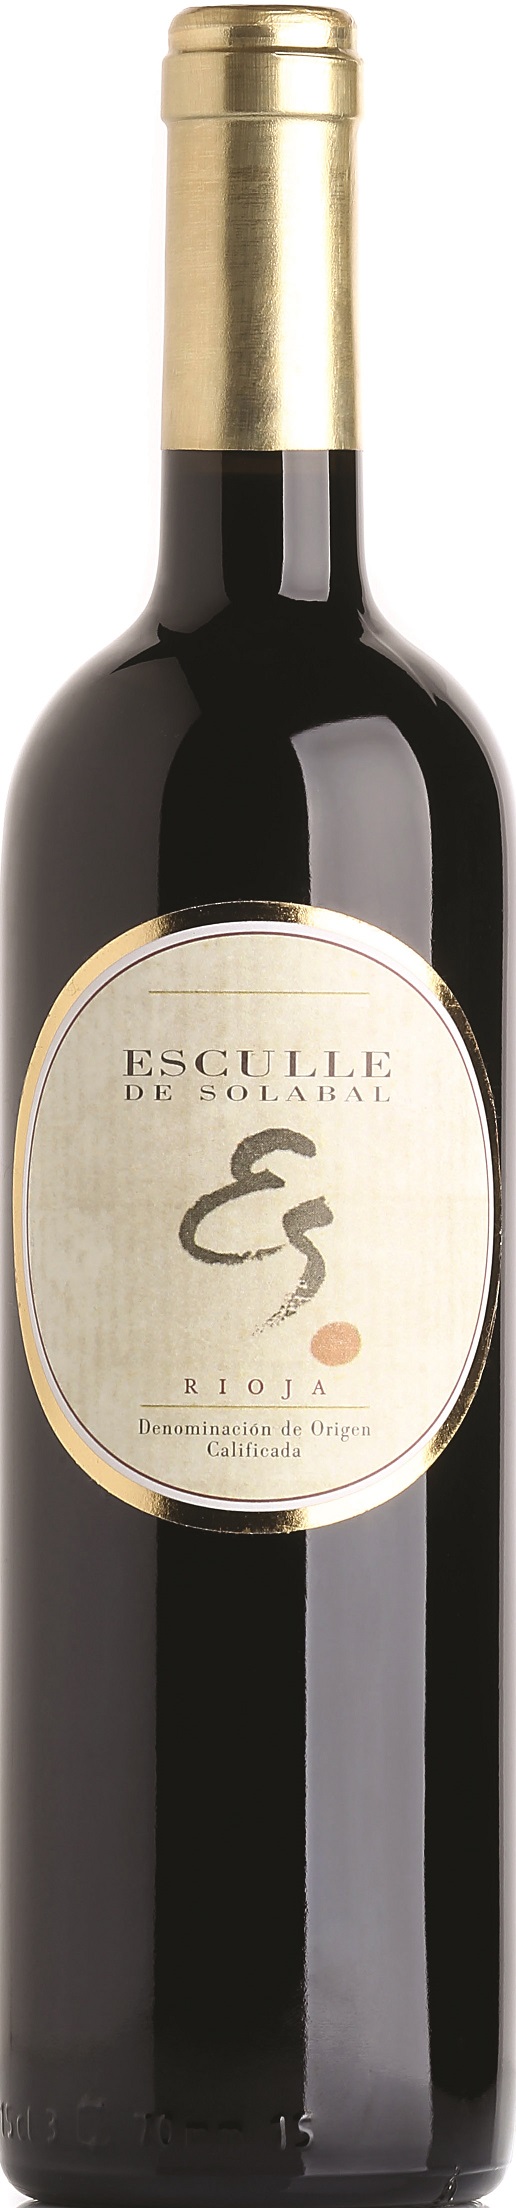 Logo del vino Esculle de Solabal